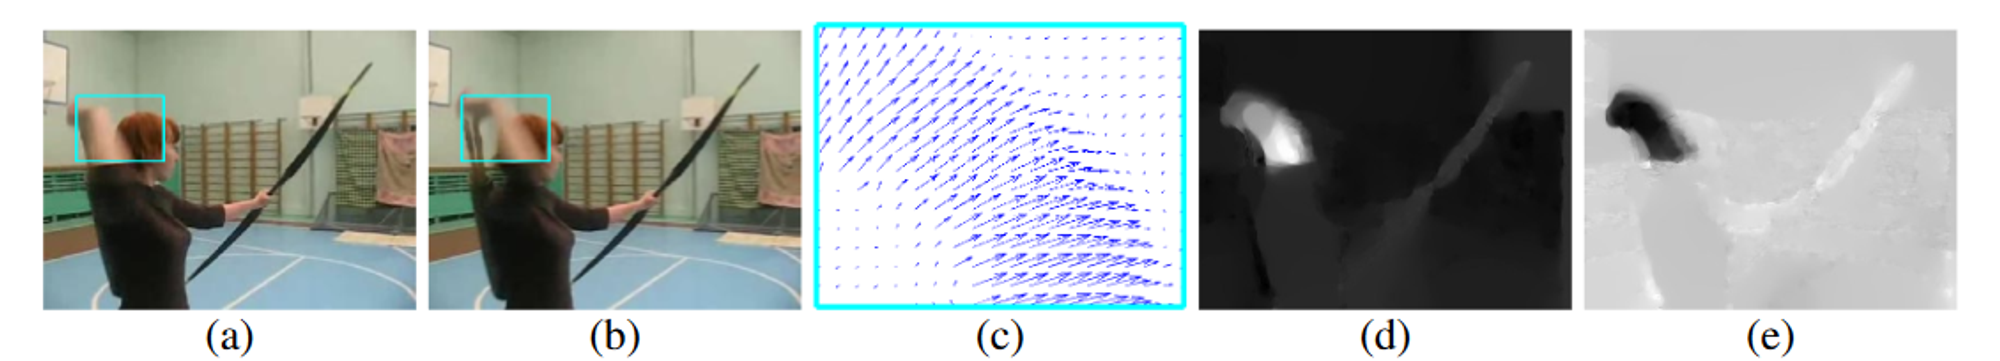 图a和图b就是两帧连续的图像，图c就是这两帧图像的光流信息，每一个像素值都会有一个向量，因此称为dense optical flow，图d和图e分别为光流信息在水平和垂直维度的表示。